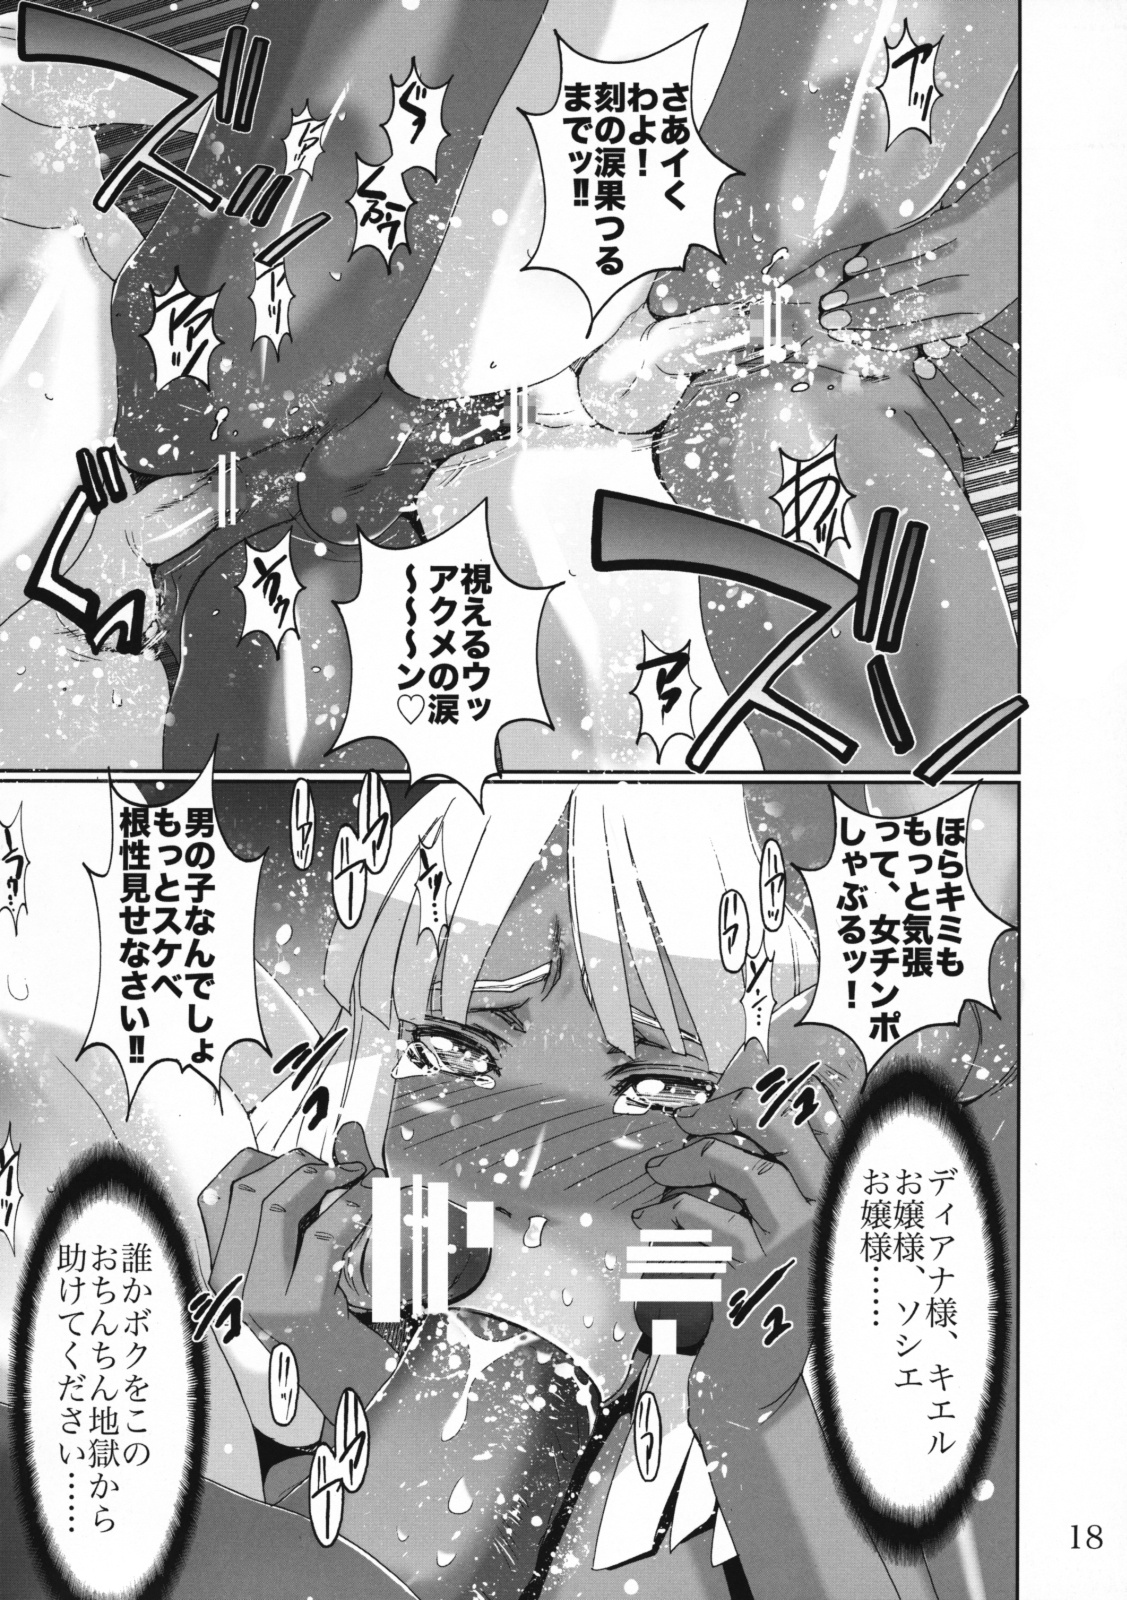 [West Island] WIB Vol.8 (Gundam) page 18 full